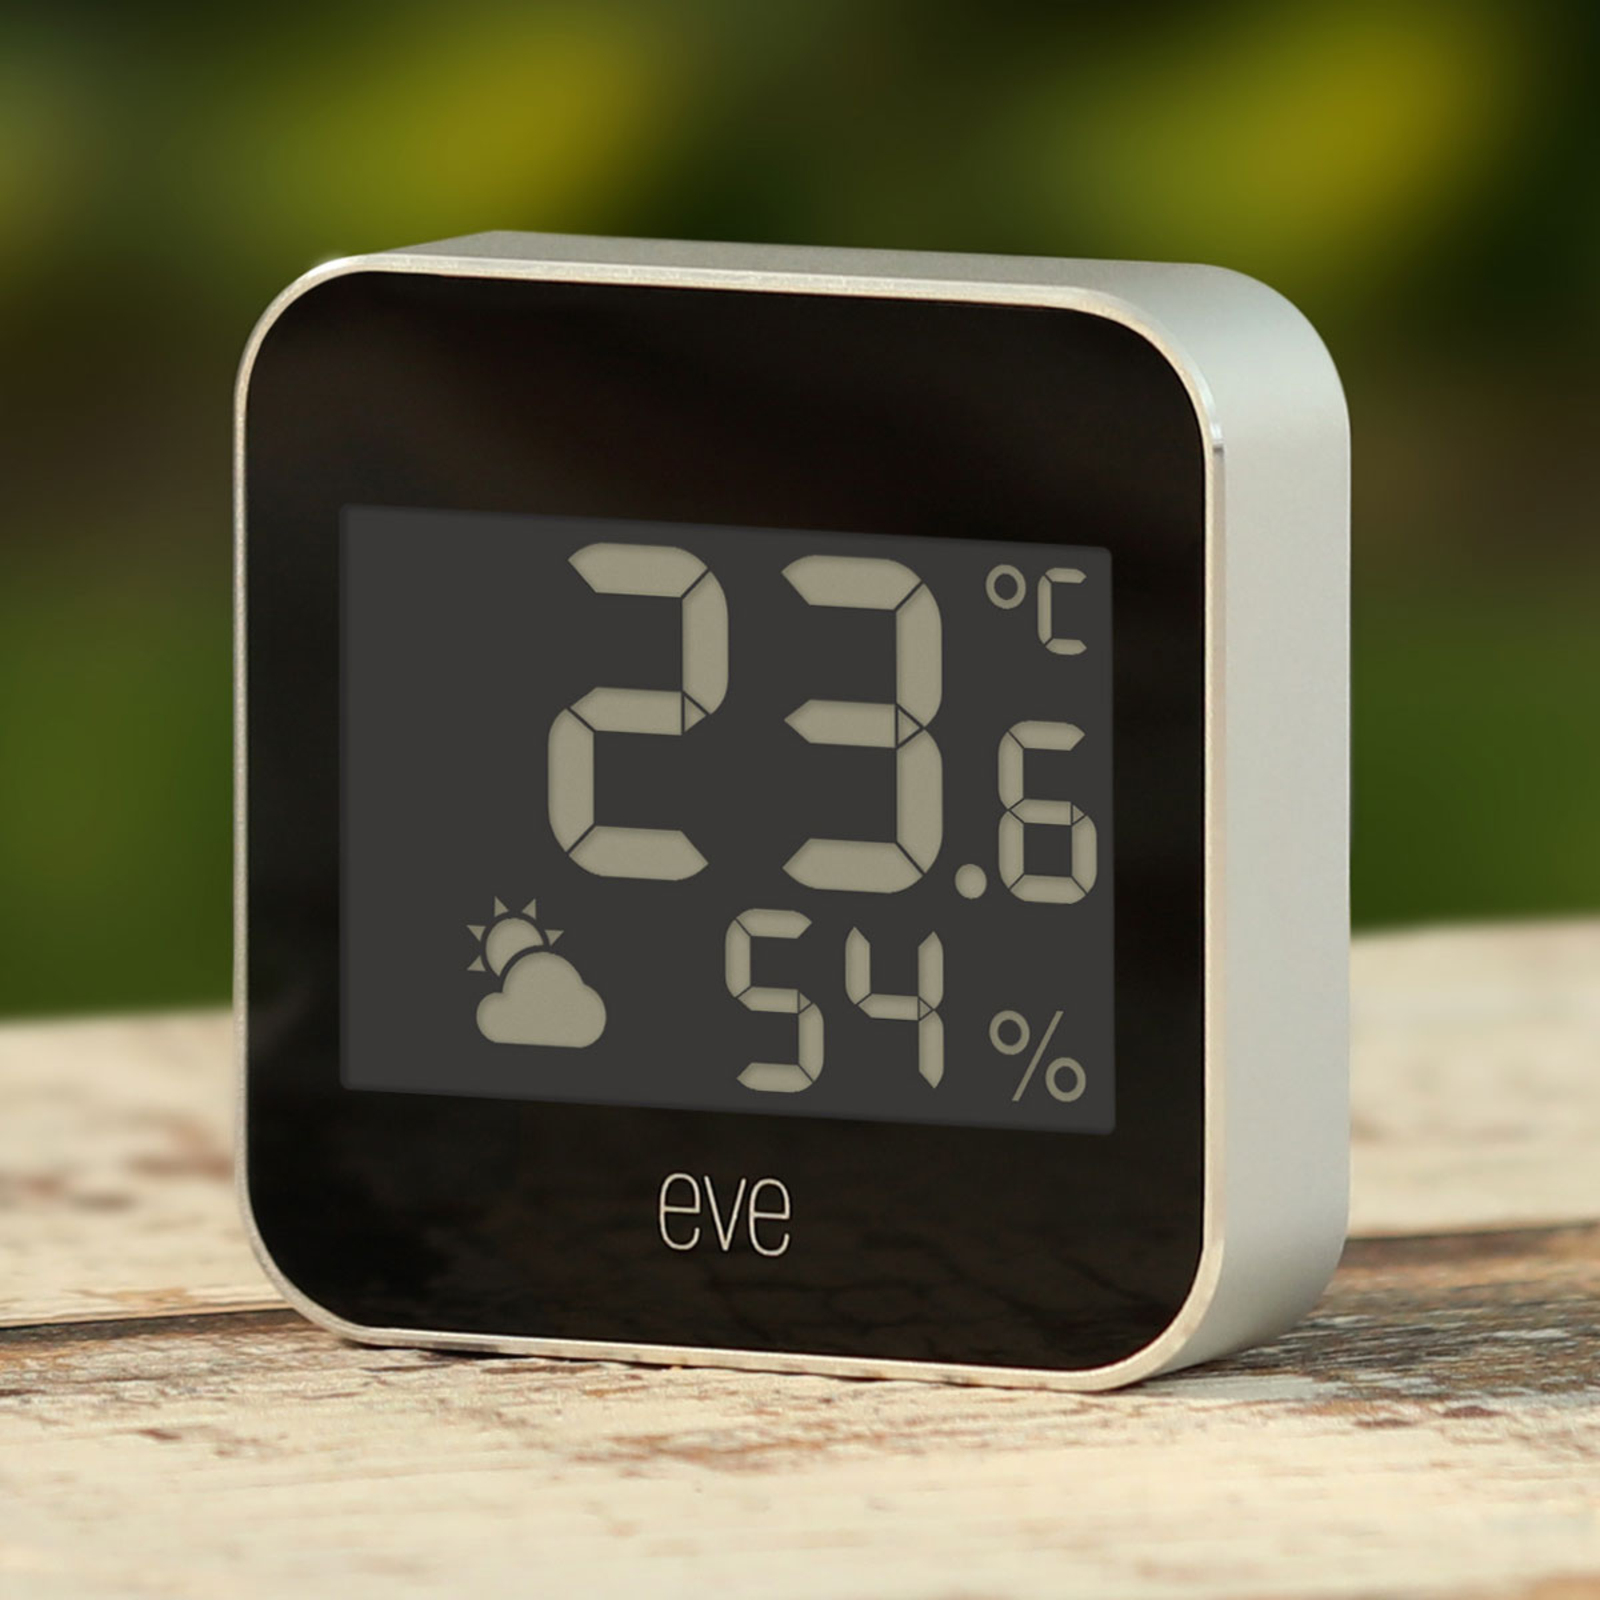 udgifterne lyse fajance Eve Weather Smart Home vejrstation, Thread-komp. | Lampegiganten.dk